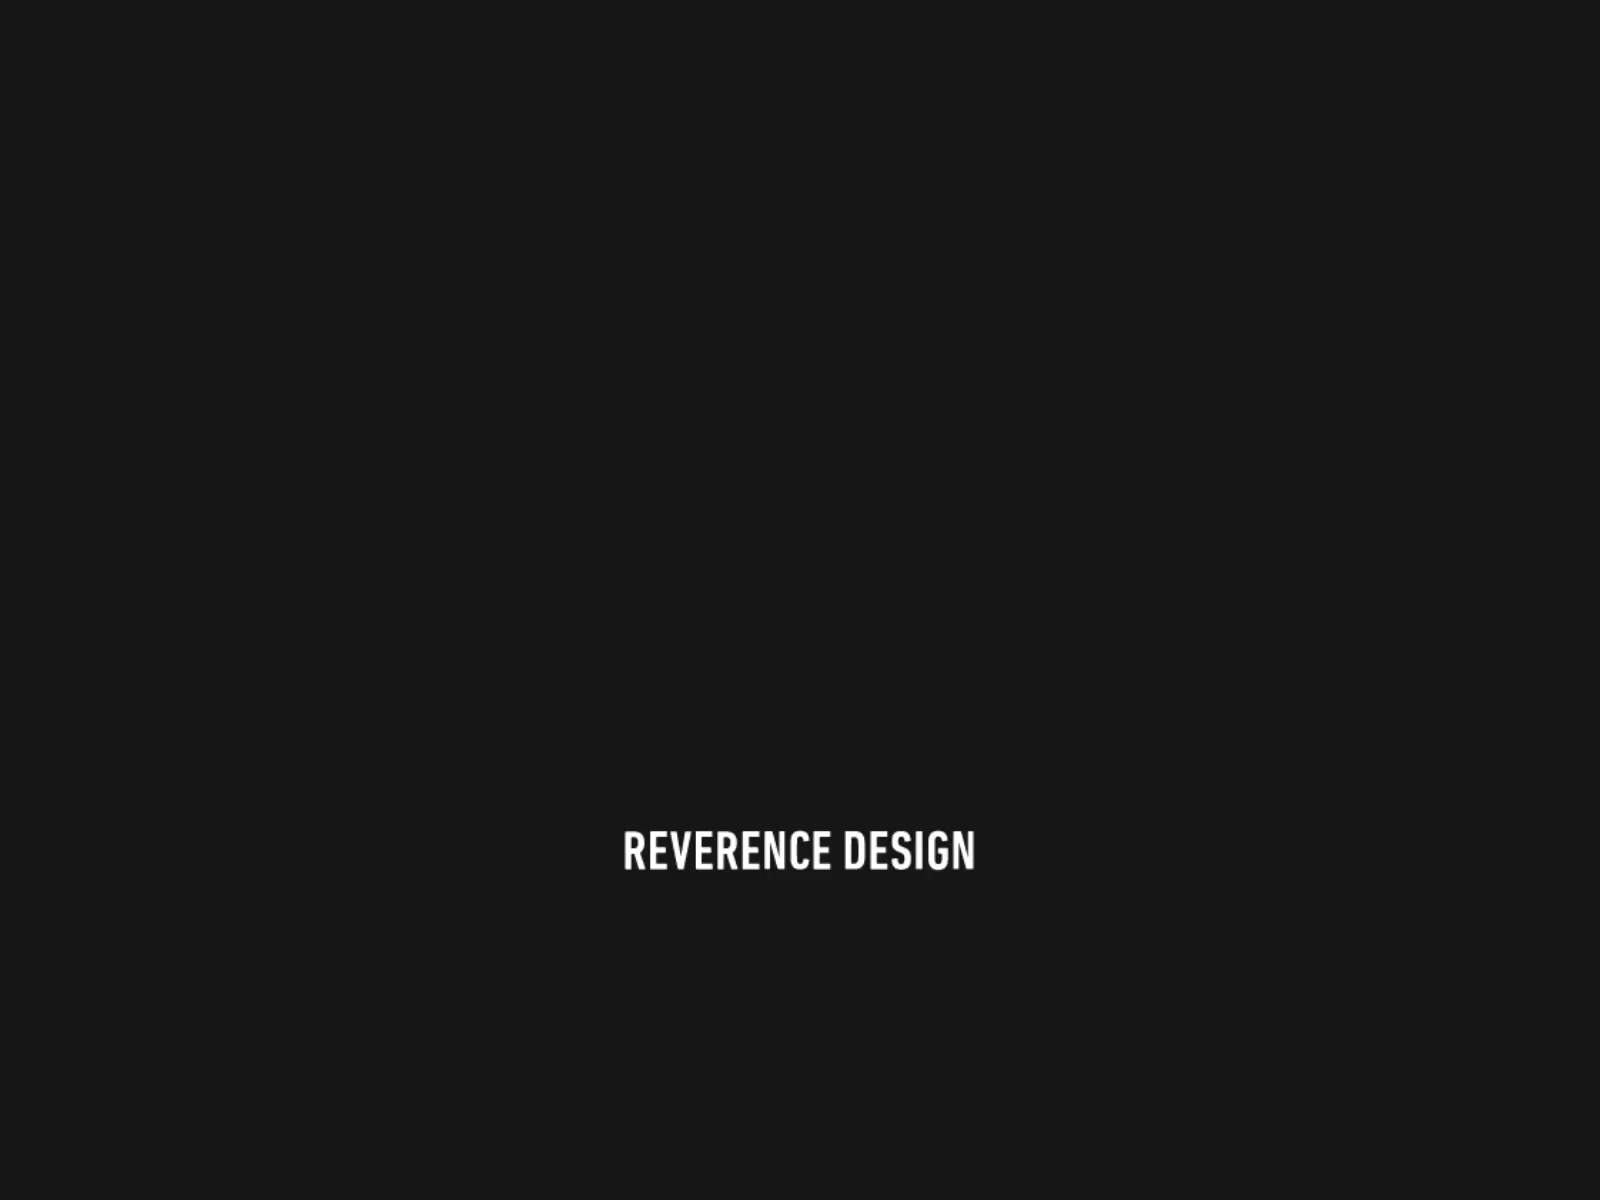 REVERENCE DESIGN - MOTION LOGO